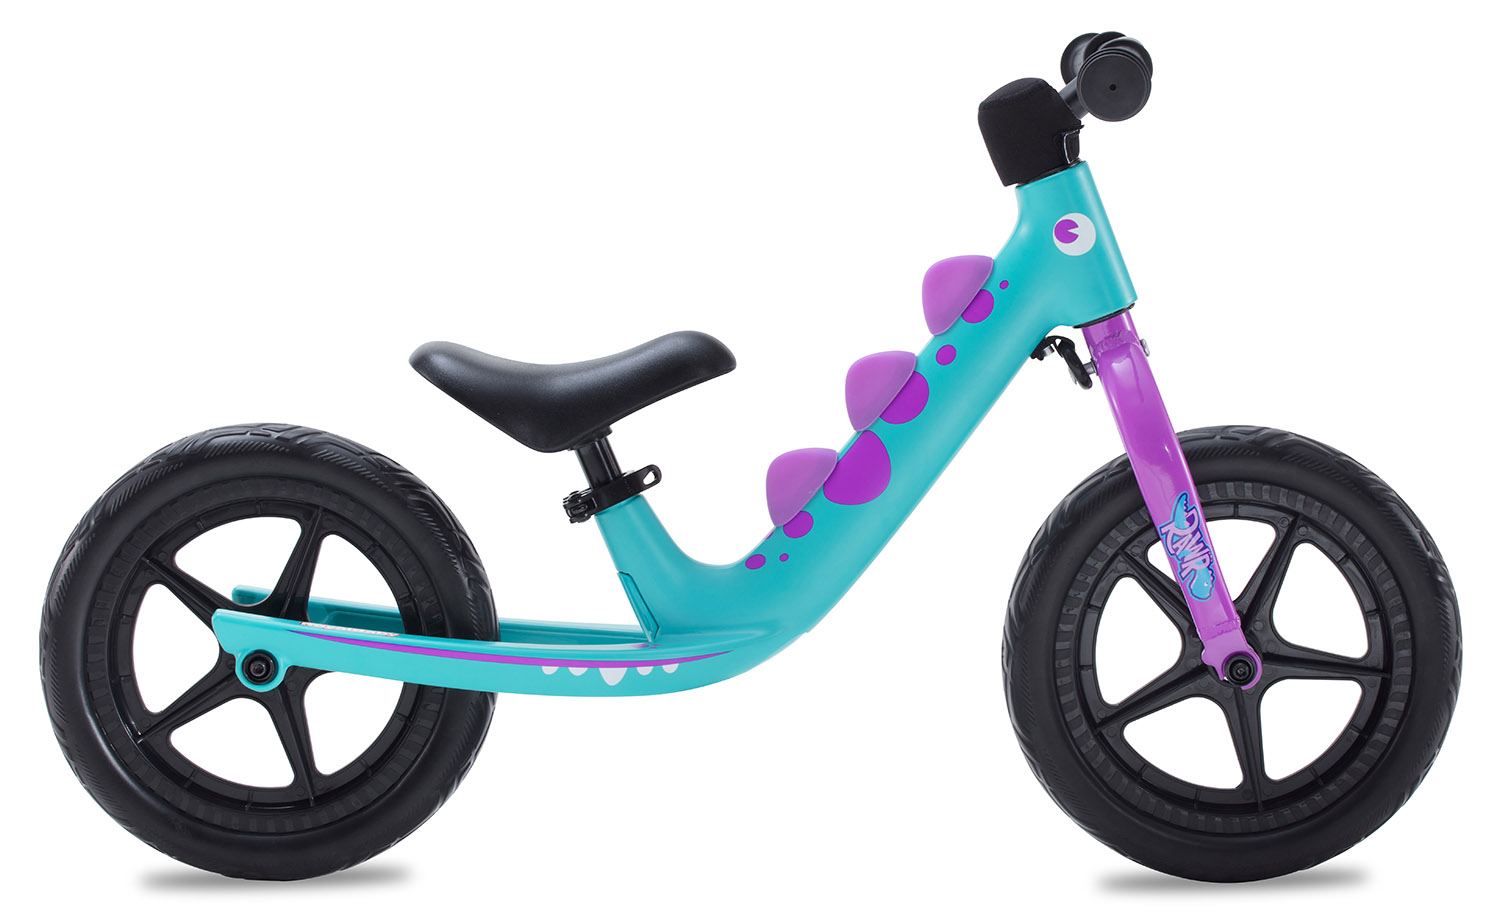  Отзывы о Детском велосипеде Royal Baby Rawr 12 (2021) 2021